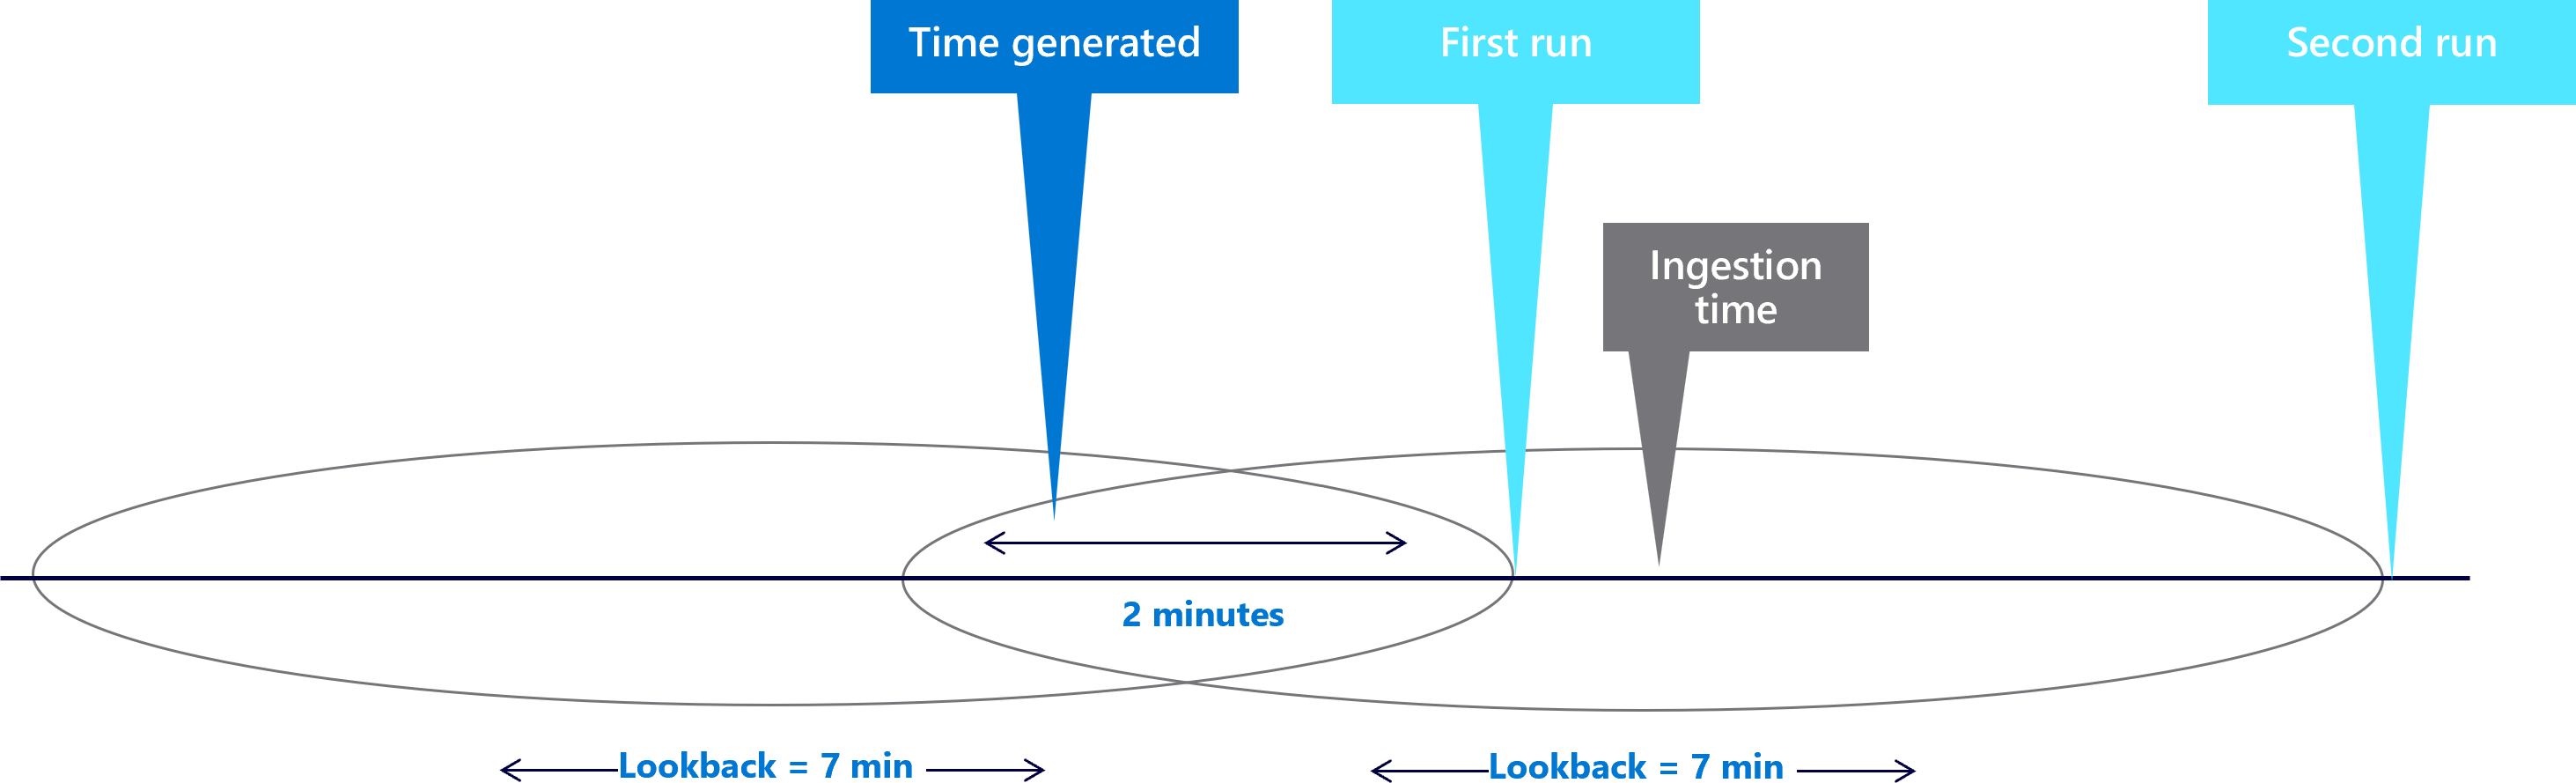 İki dakikalık gecikme süresiyle yedi dakikalık geriye bakma pencerelerini gösteren diyagram.